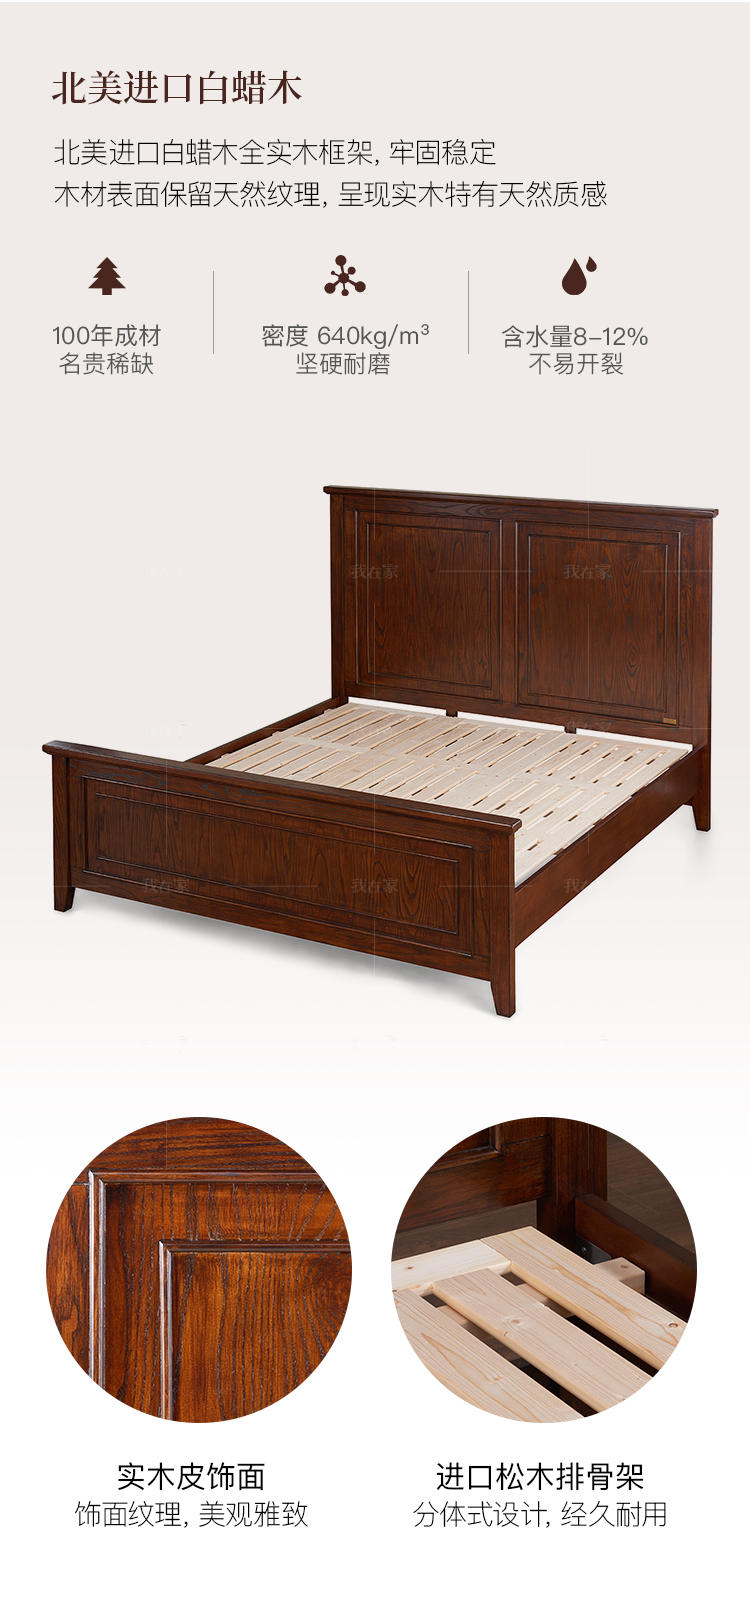 简约美式风格克莱顿双人床的家具详细介绍